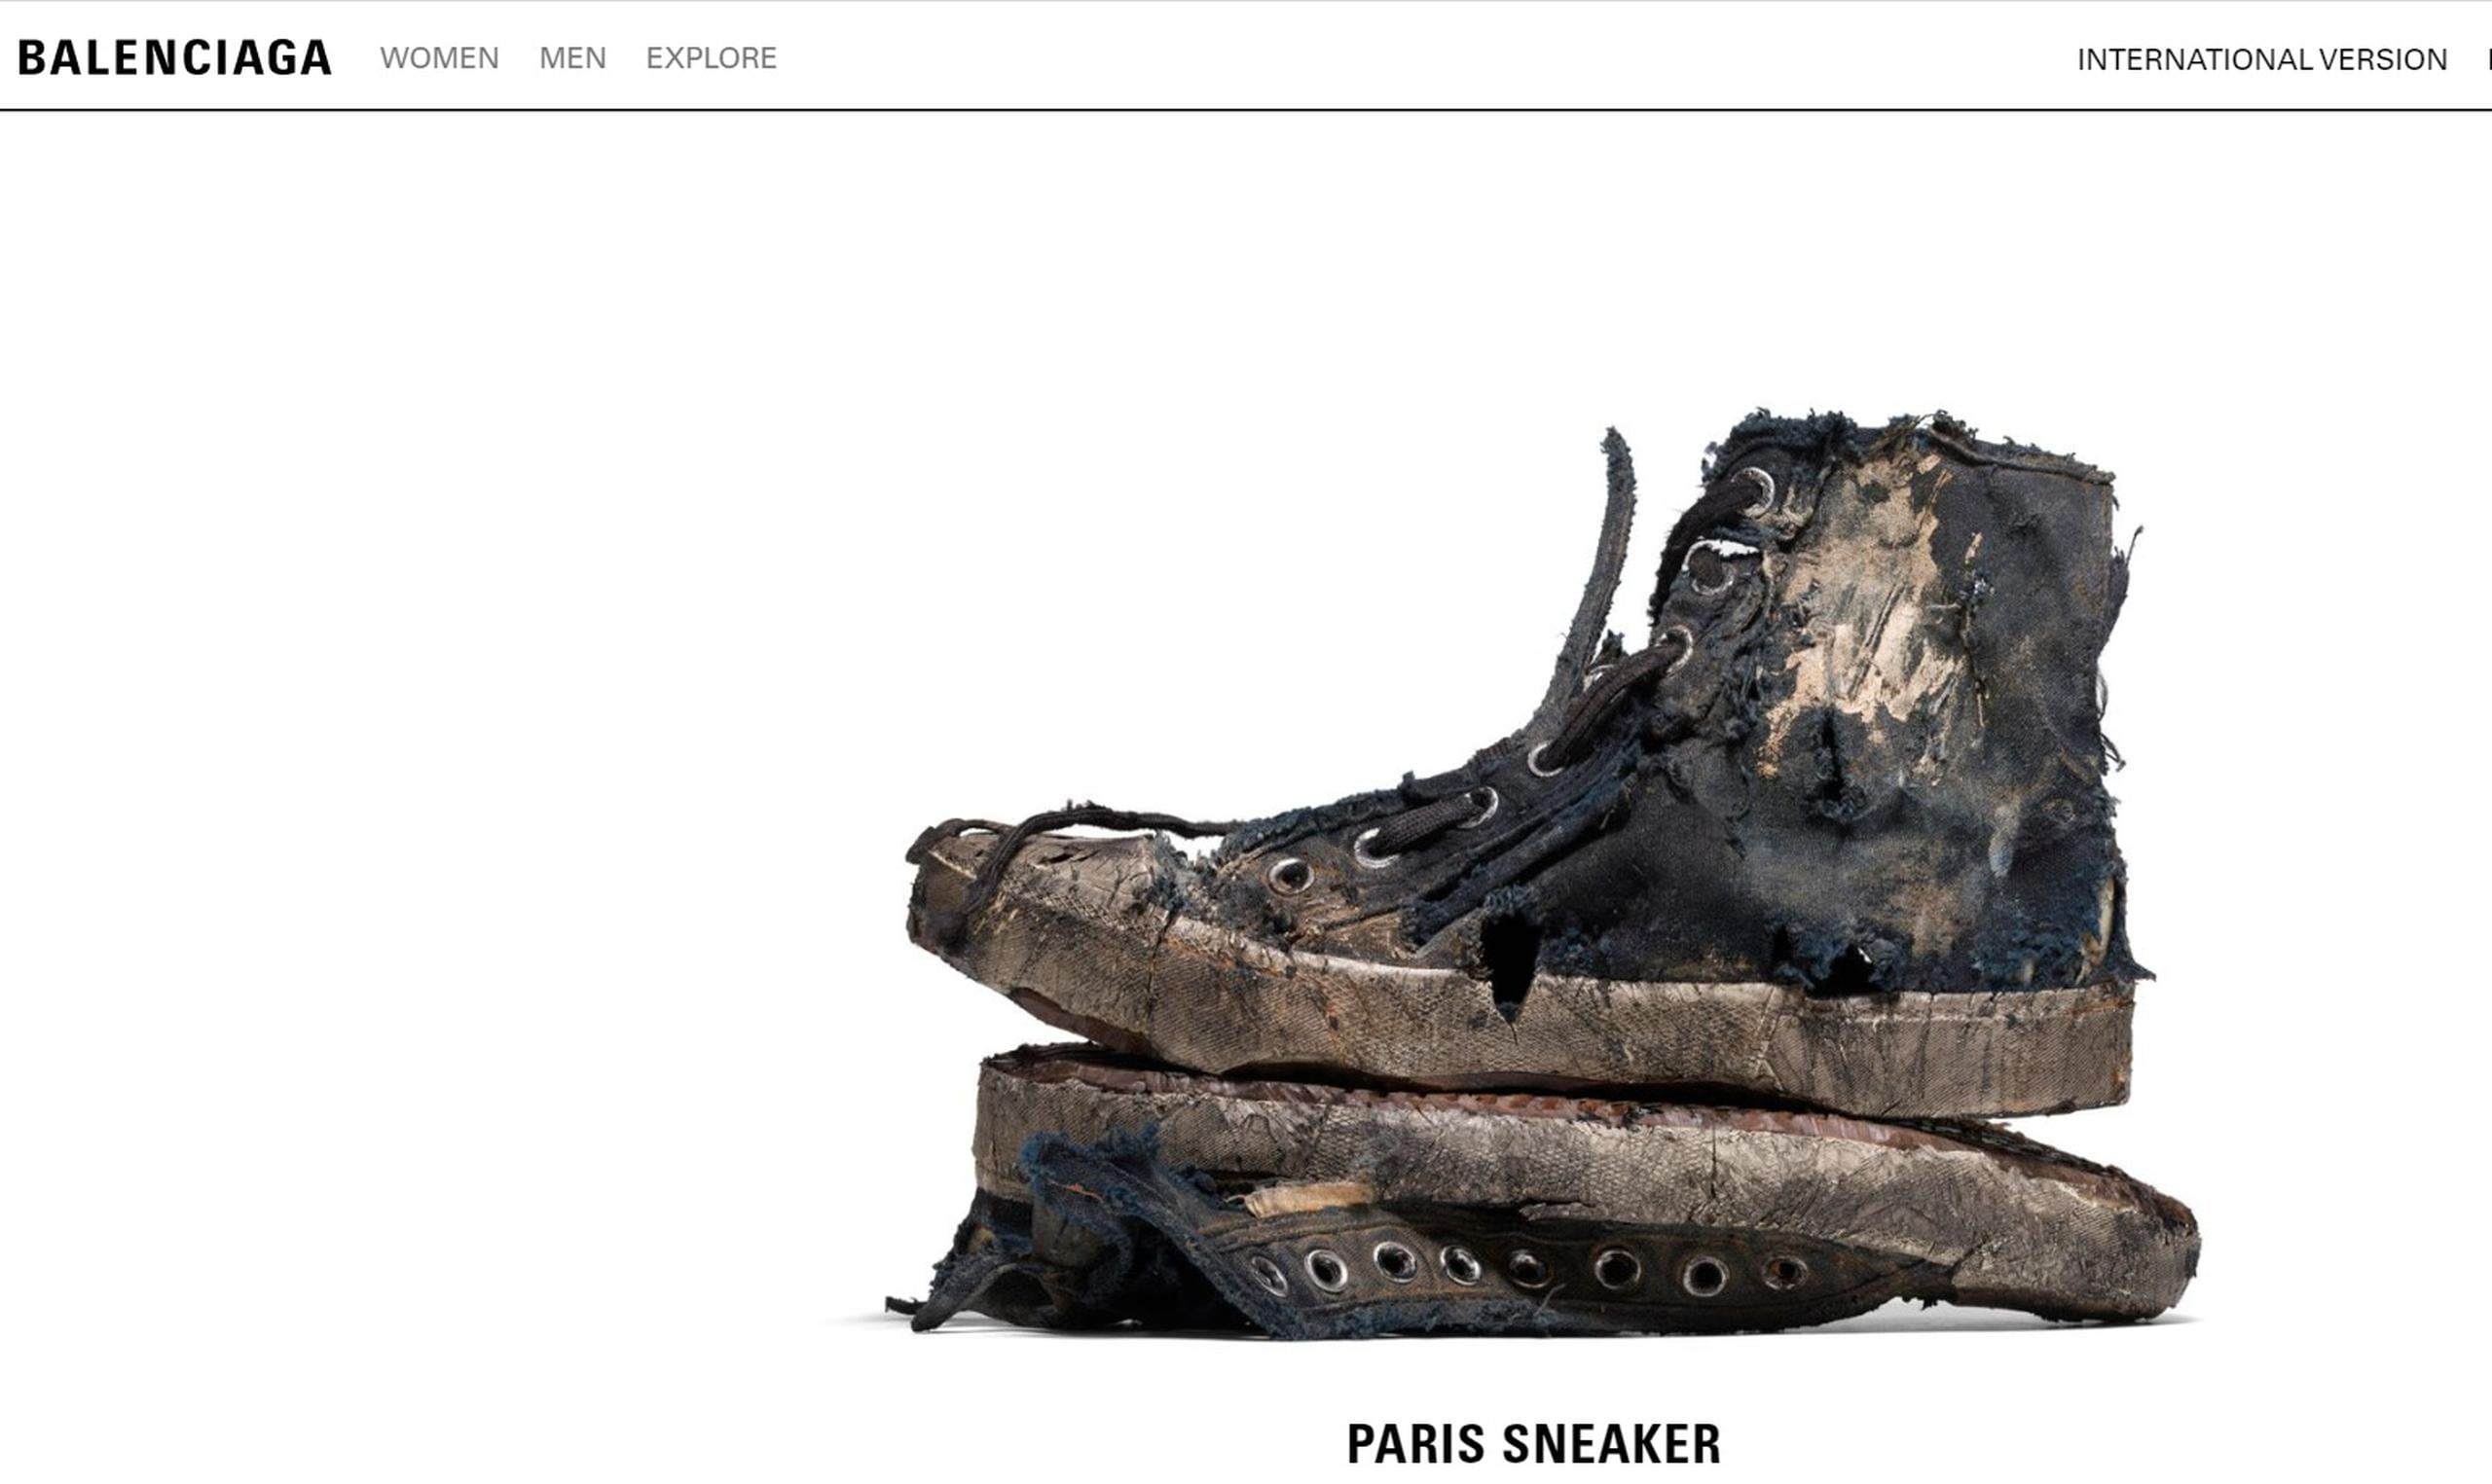 La casa de moda lanzó solos 100 pares de la zapatilla Paris "full destroyed".